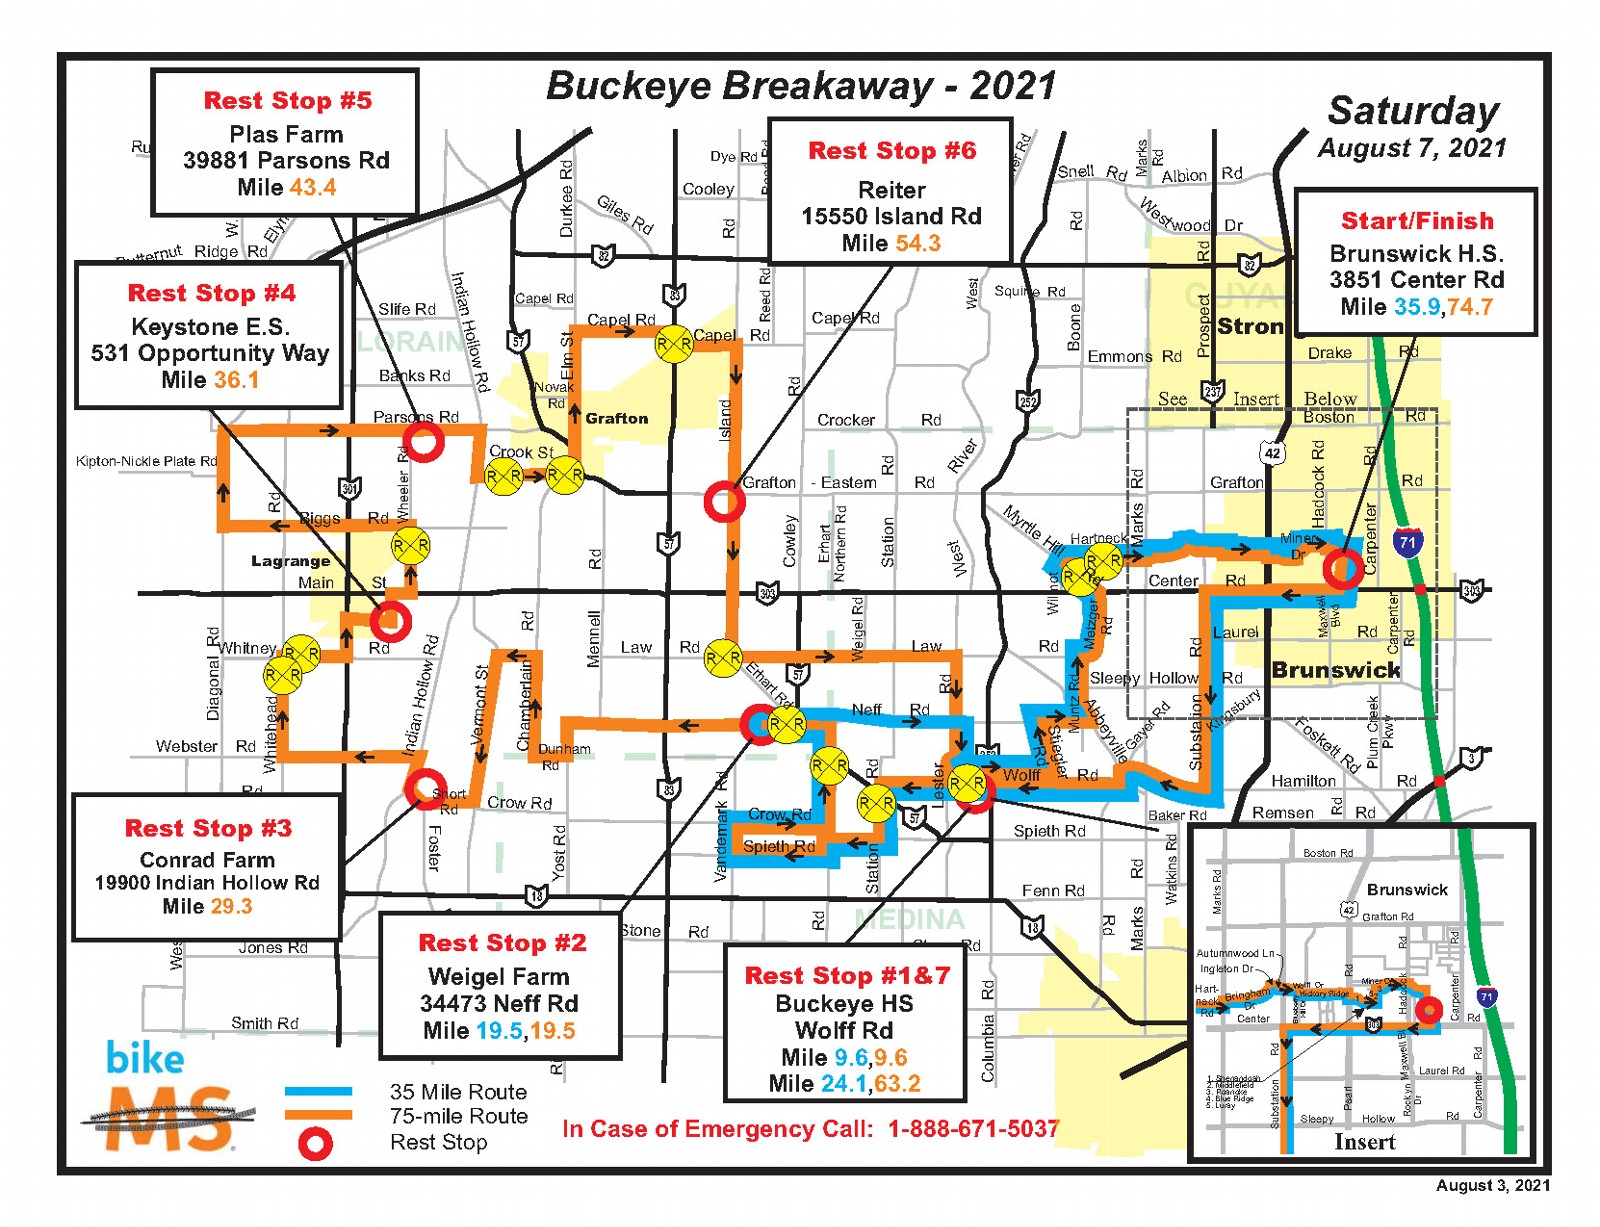 Bike MS: Buckeye Breakaway 2021 Rest Stop